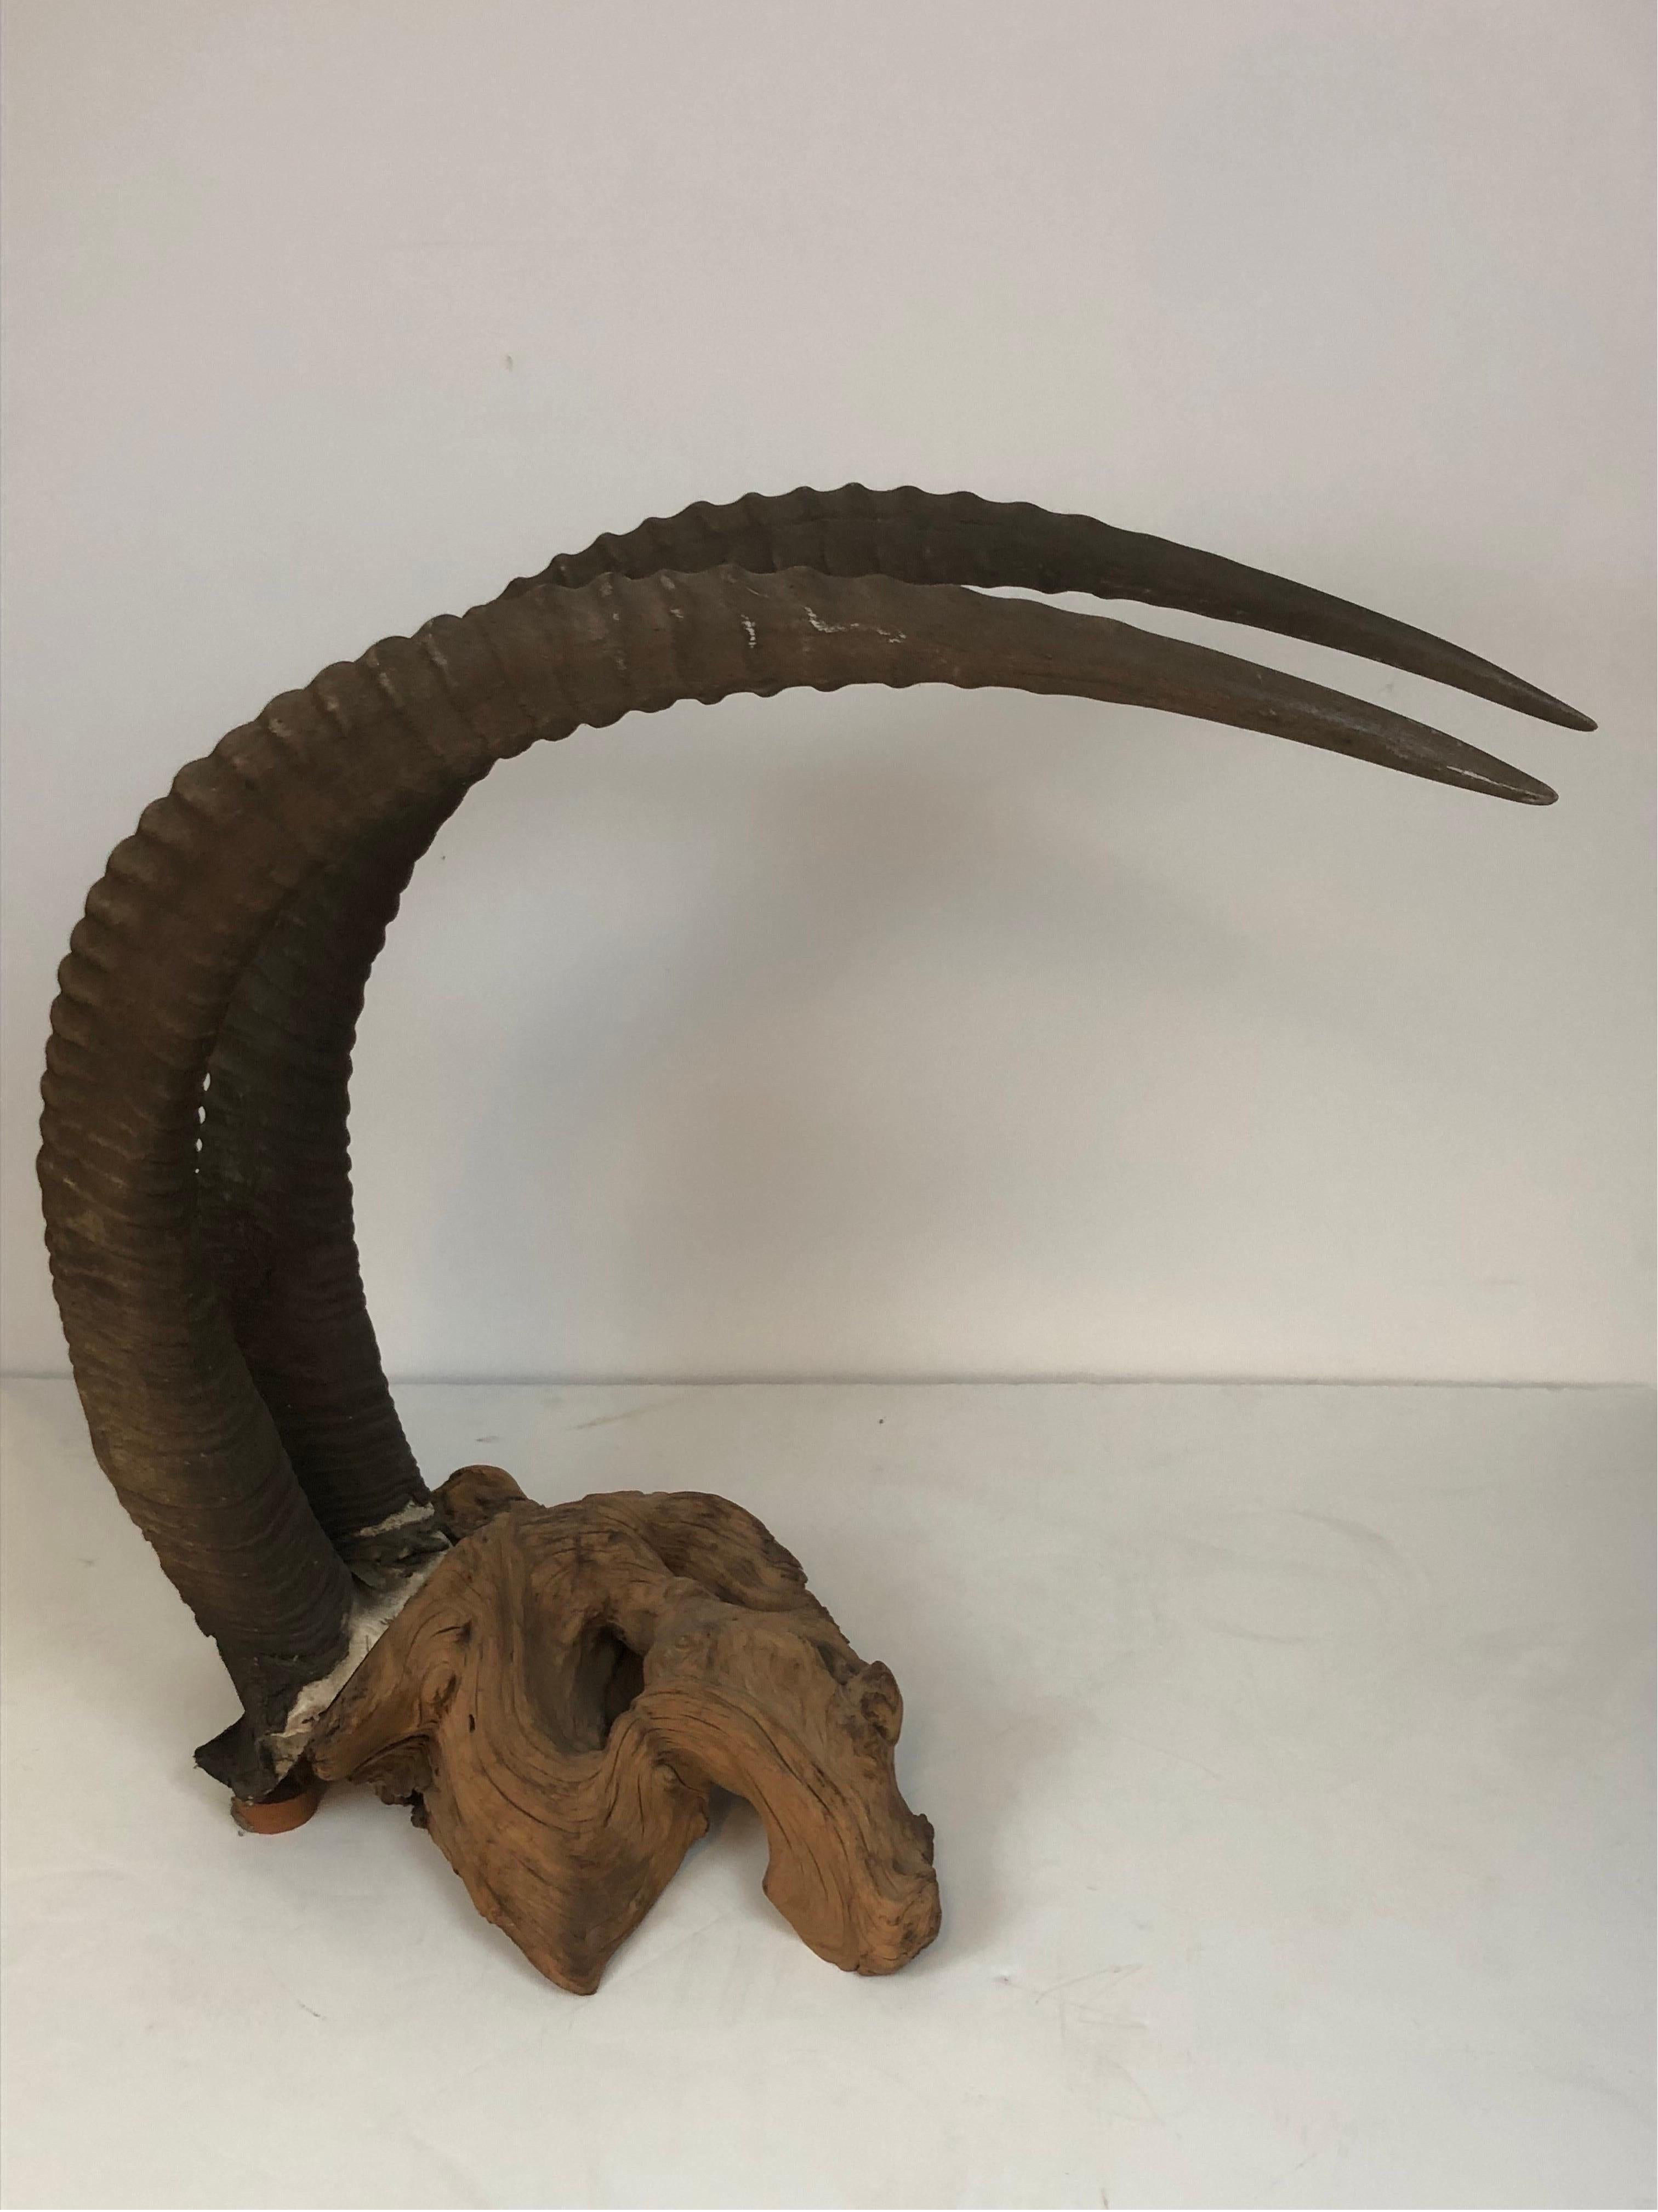 sable antelope skull